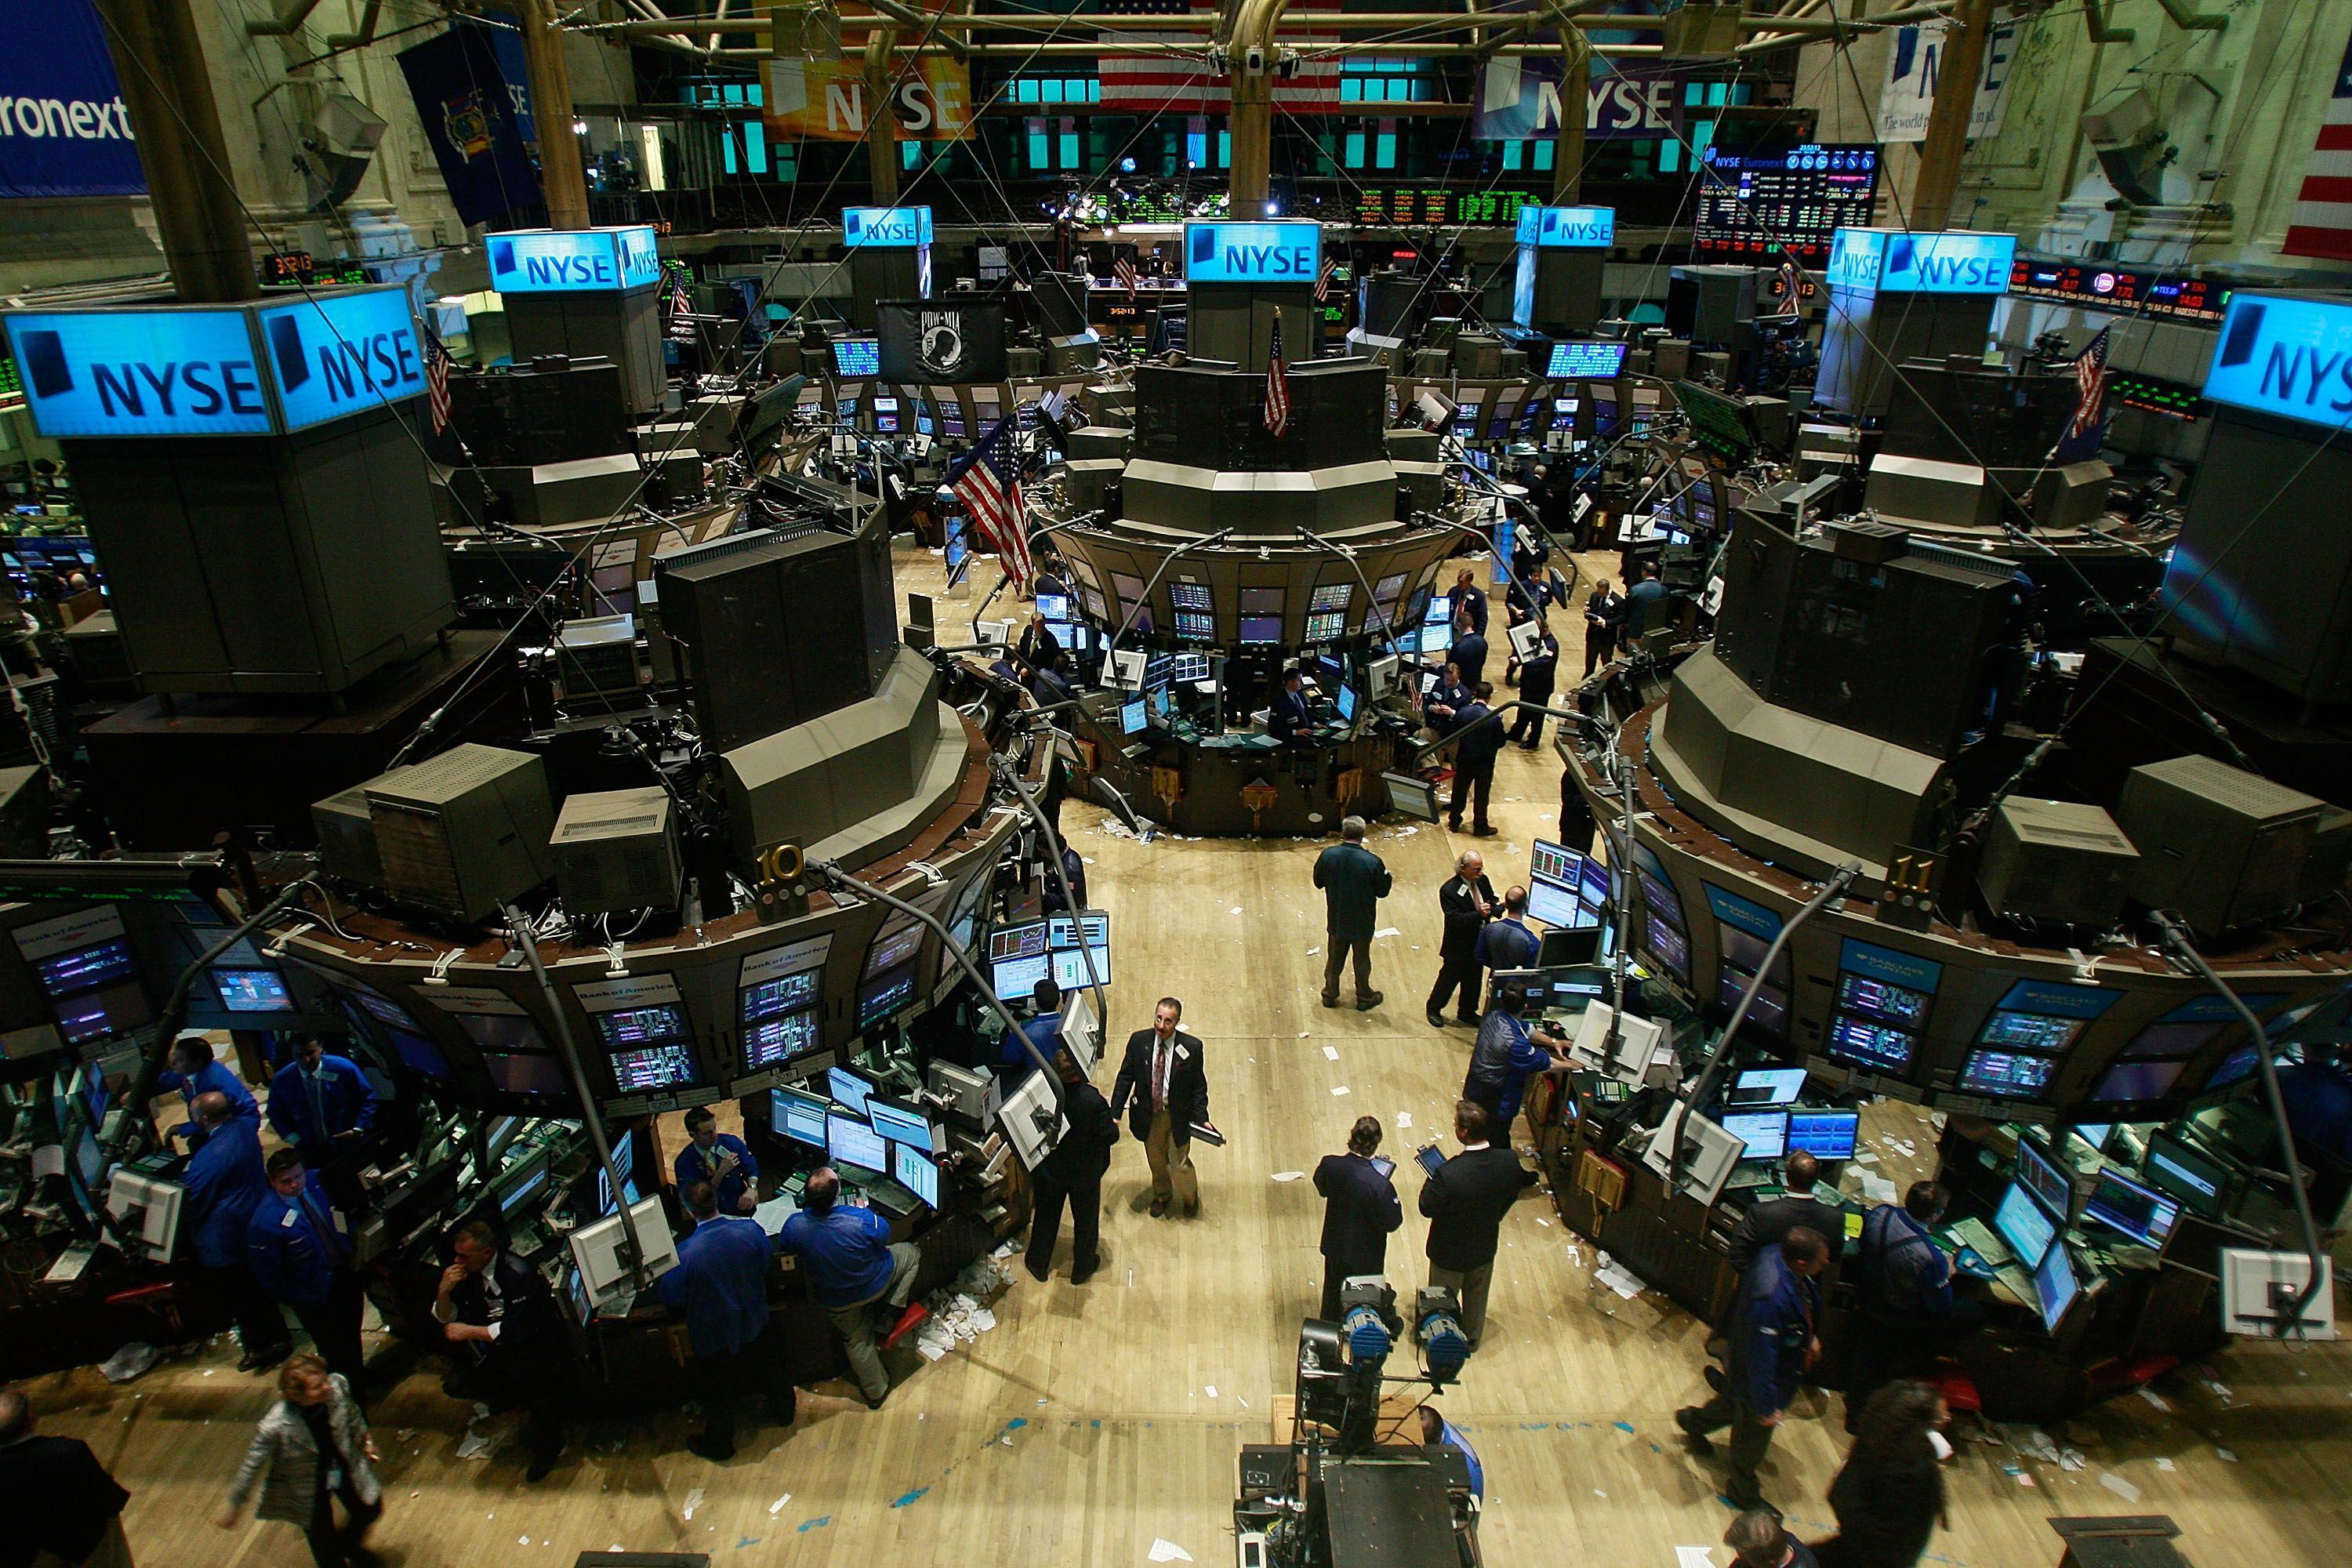 2048x1536px New York Stock Exchange (672.41 KB).07